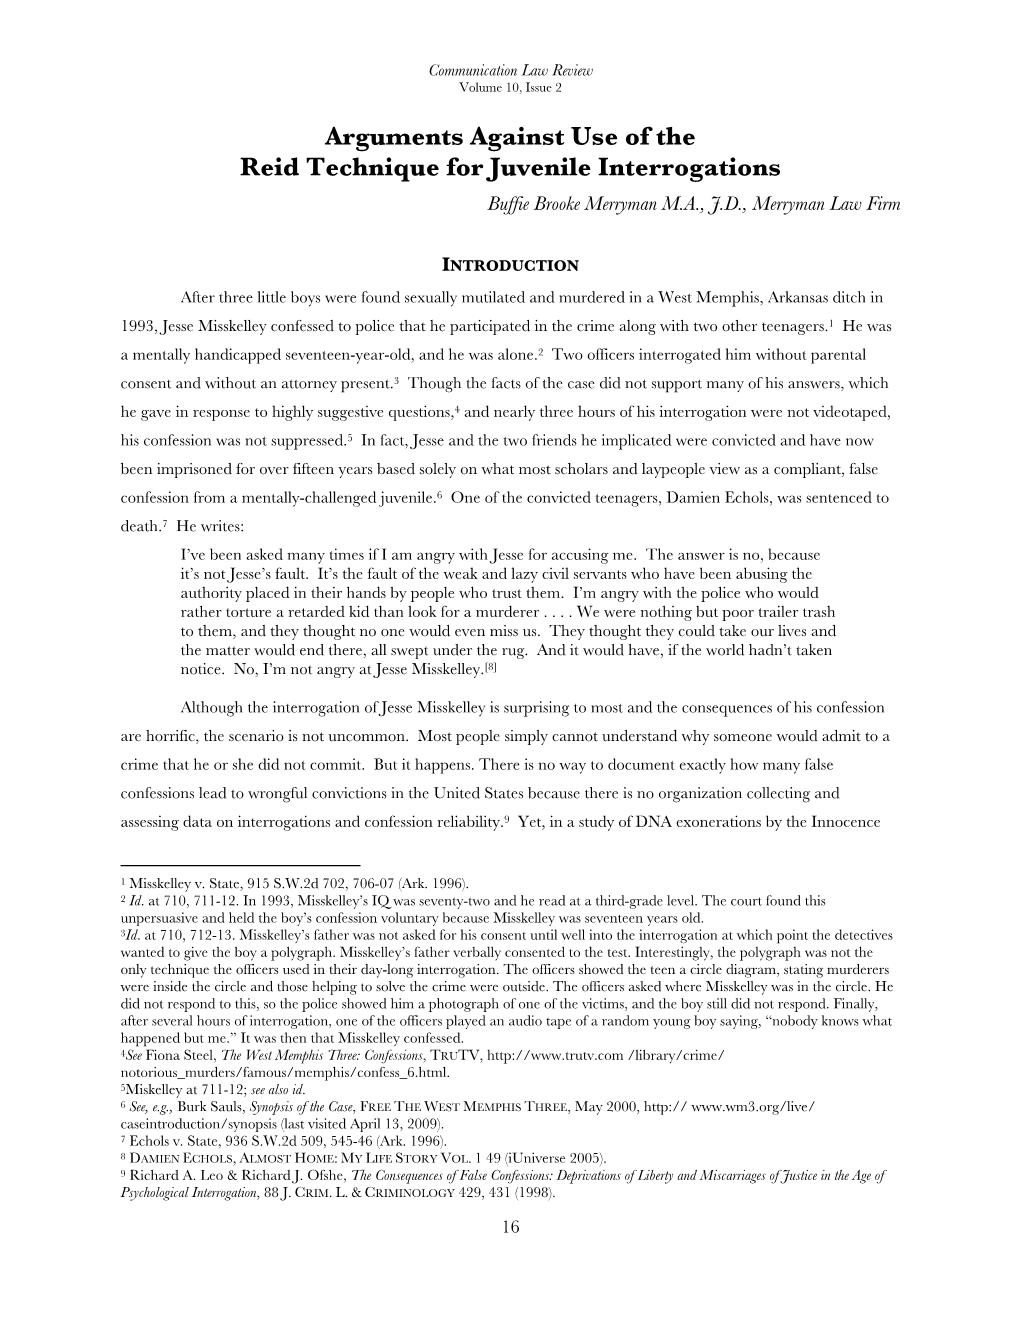 Arguments Against Use of the Reid Technique for Juvenile Interrogations Buffie Brooke Merryman M.A., J.D., Merryman Law Firm